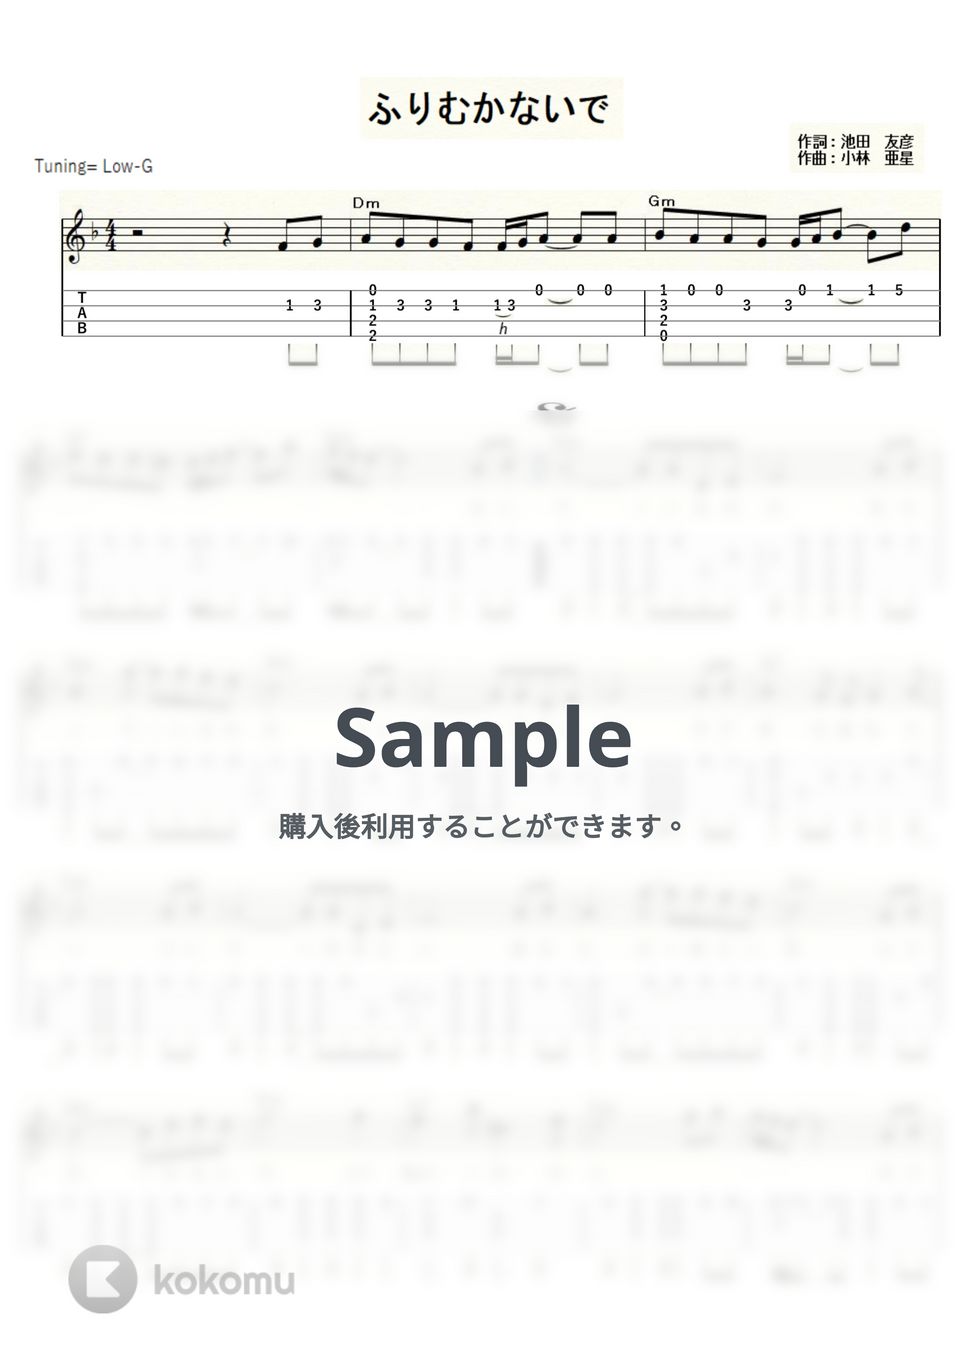 ハニー・ナイツ - ふりむかないで (ｳｸﾚﾚｿﾛ/Low-G/中級) by ukulelepapa